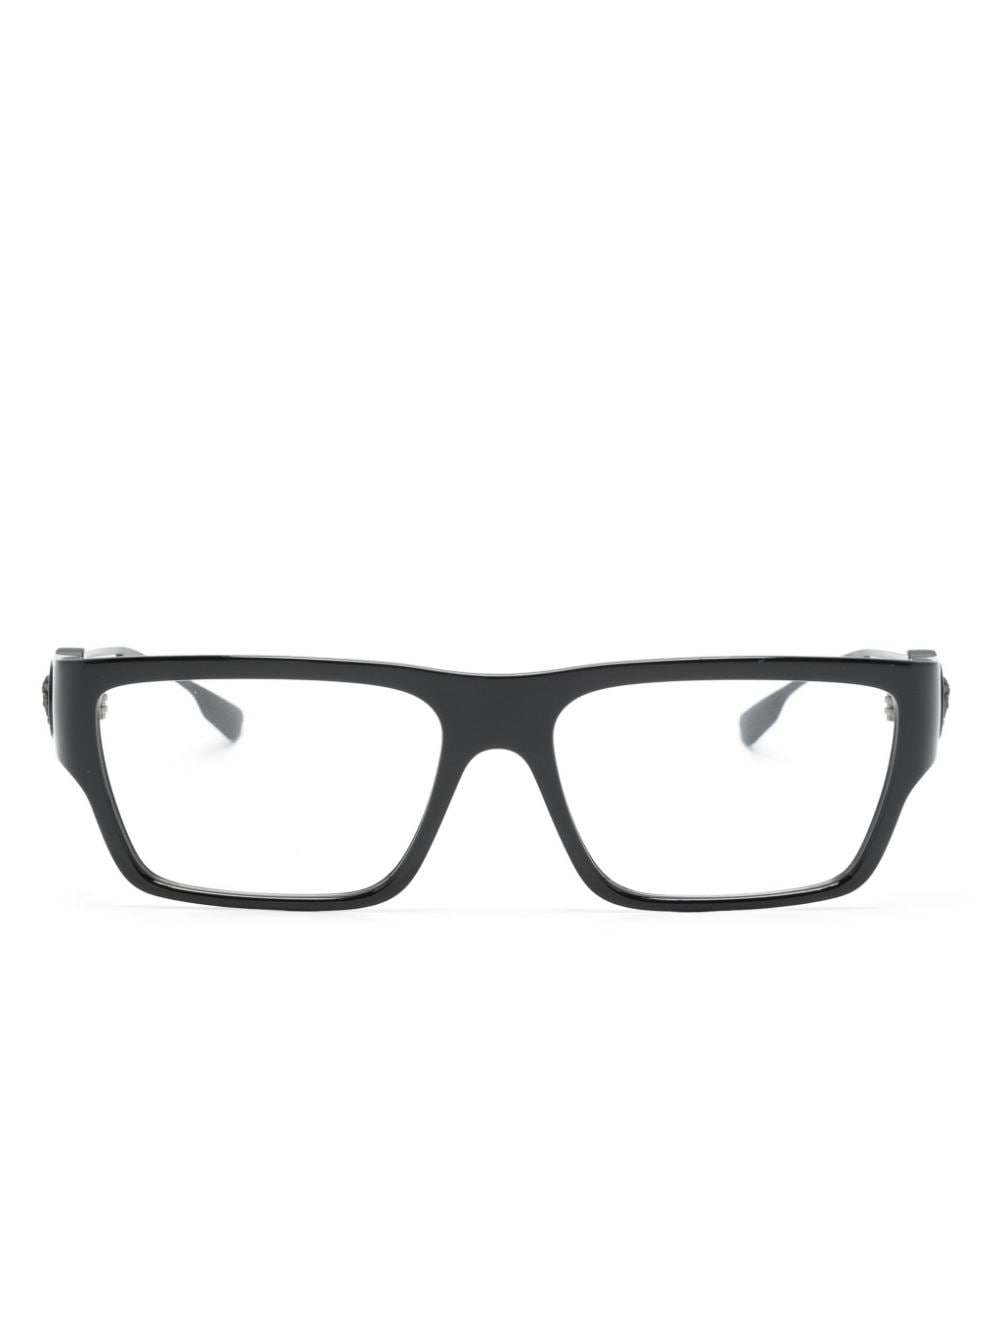 VE3359 rectangle-frame glasses